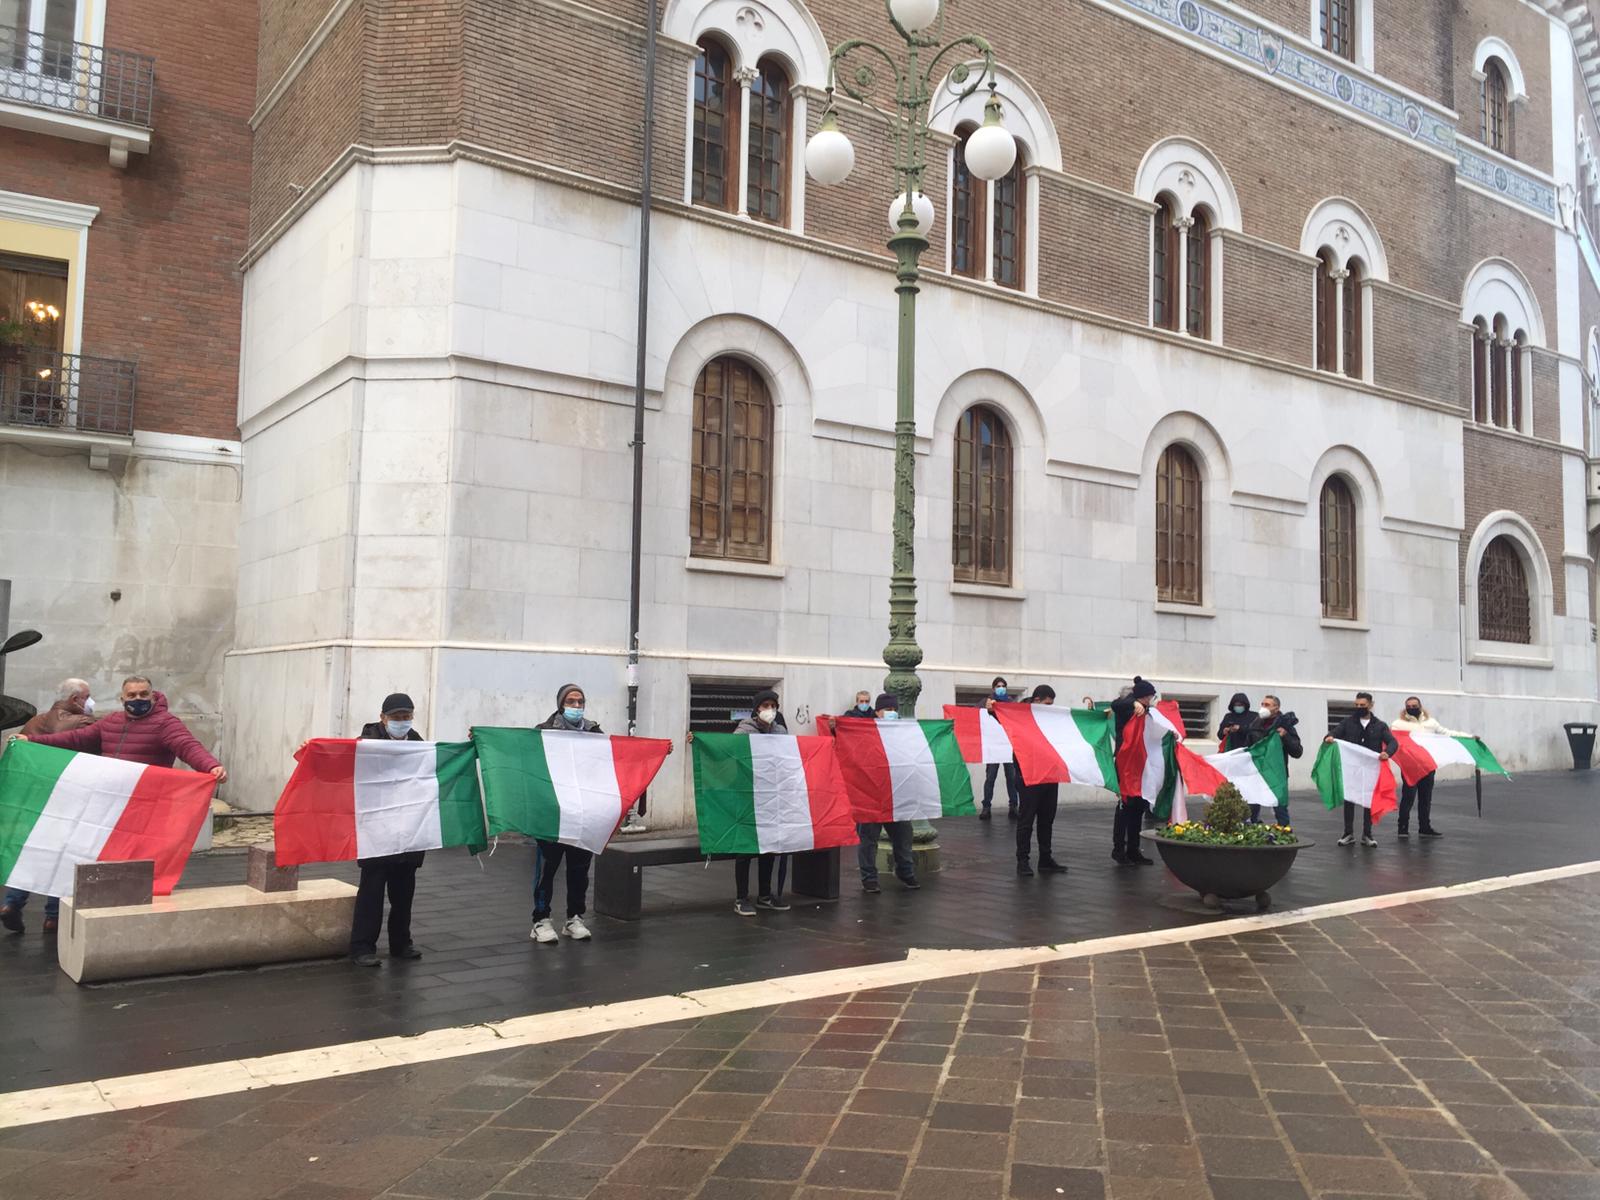 Benevento| Manifestazione degli ambulanti: “vogliamo lavorare”